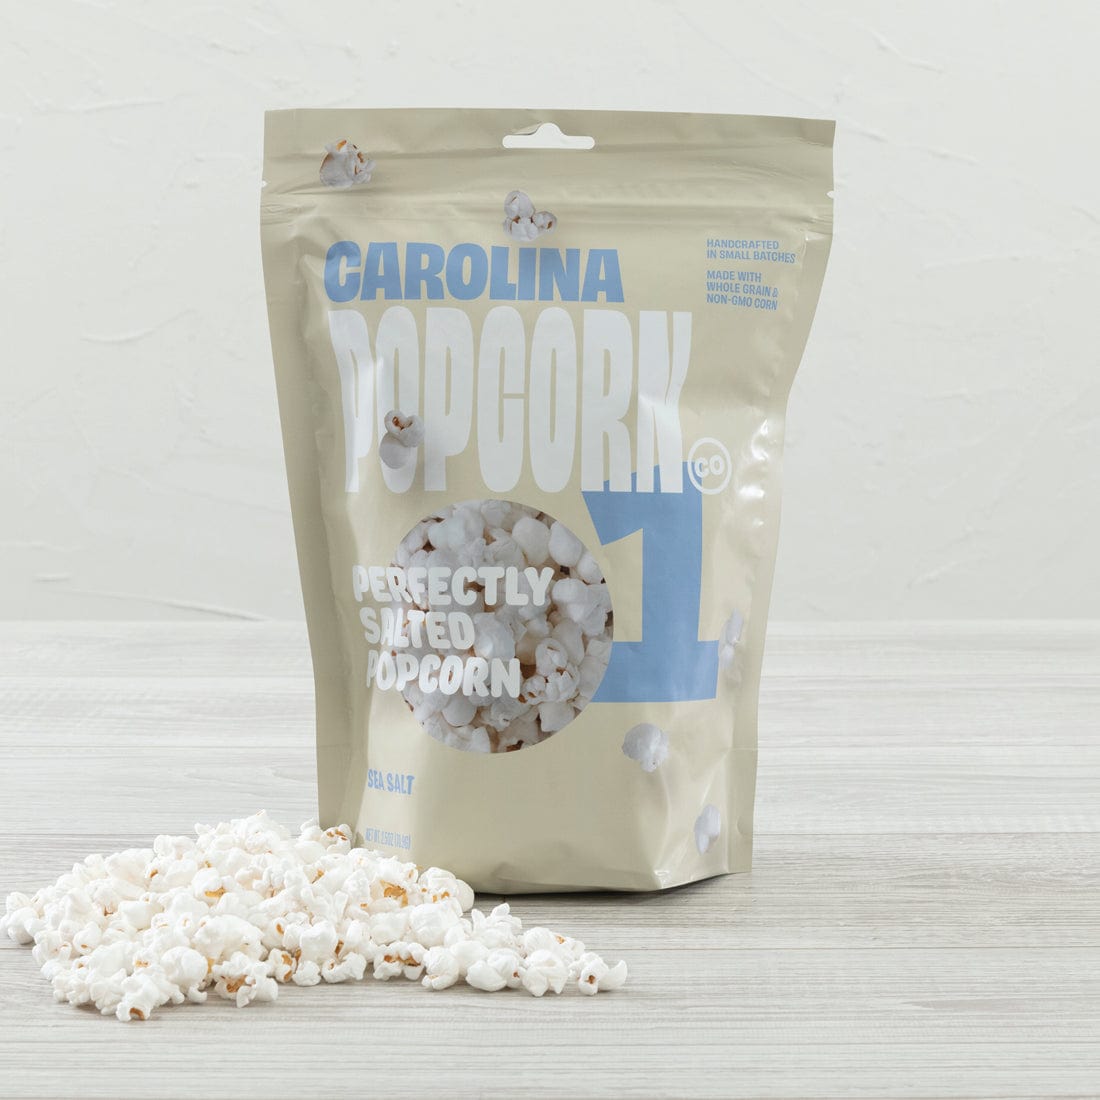 Carolina Popcorn Co. Carolina Popcorn Co. Sea Salt Popcorn 2.5 oz